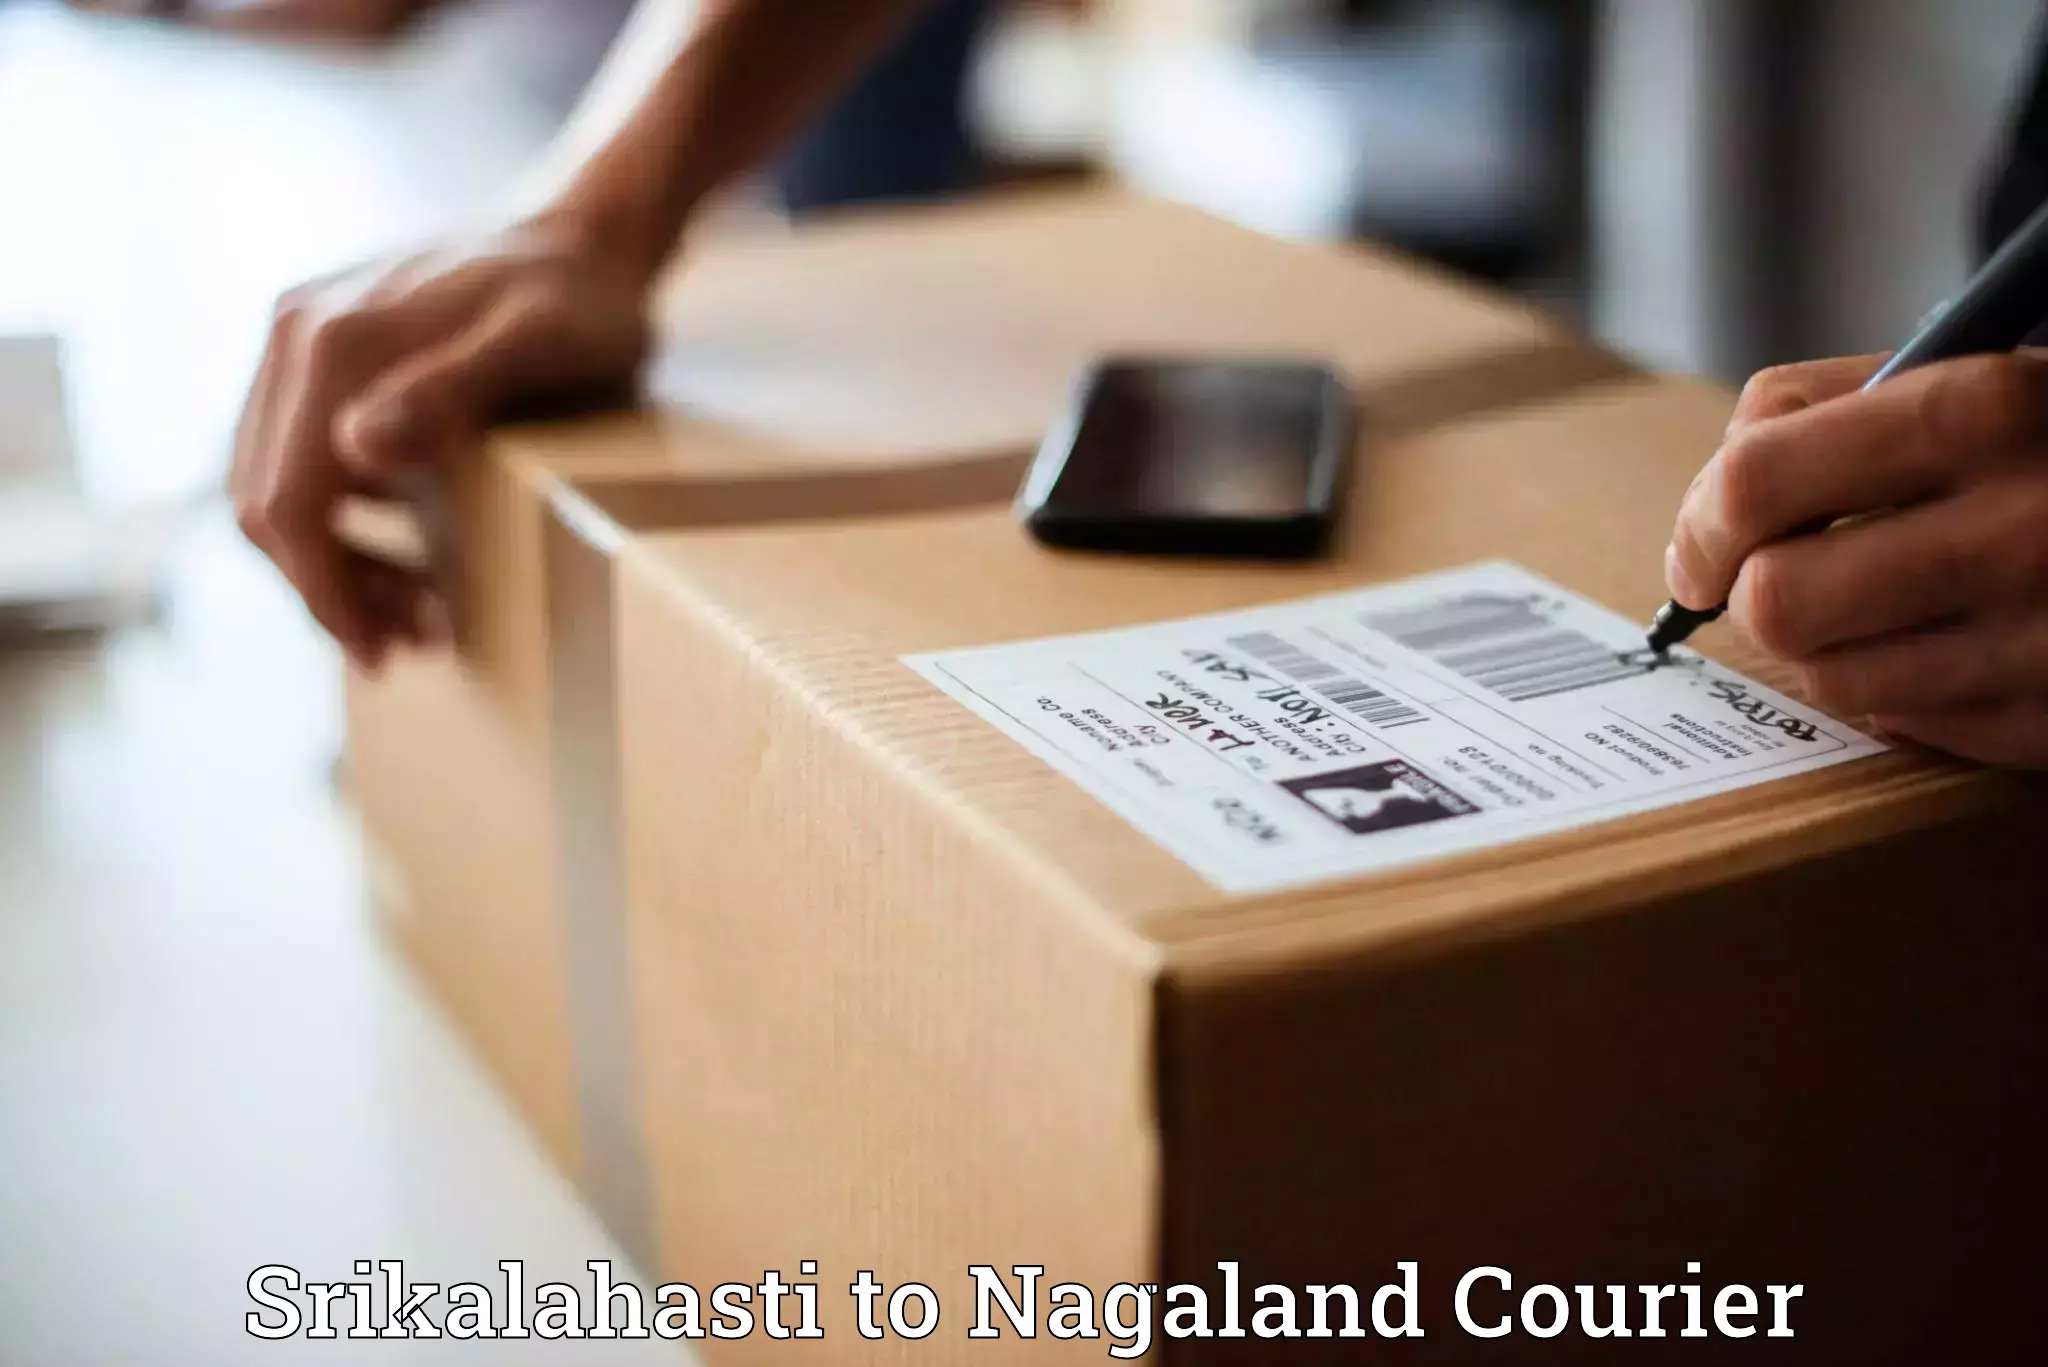 Bulk shipment Srikalahasti to NIT Nagaland